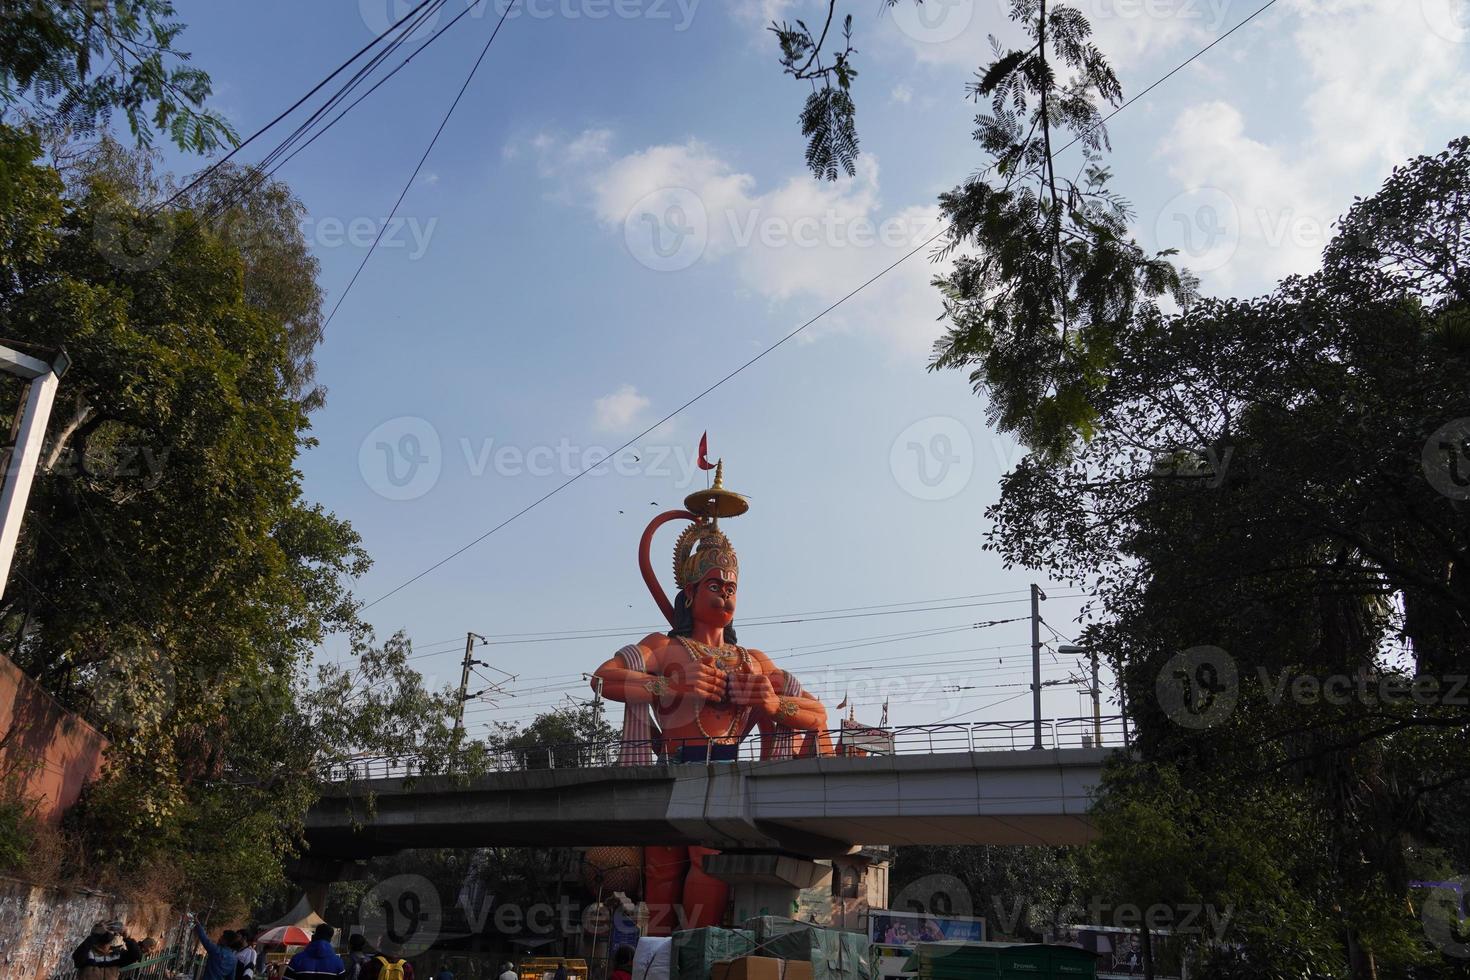 hanuman ji scultura alta 108 piedi di lord hanuman appena fuori dall'ingresso principale foto